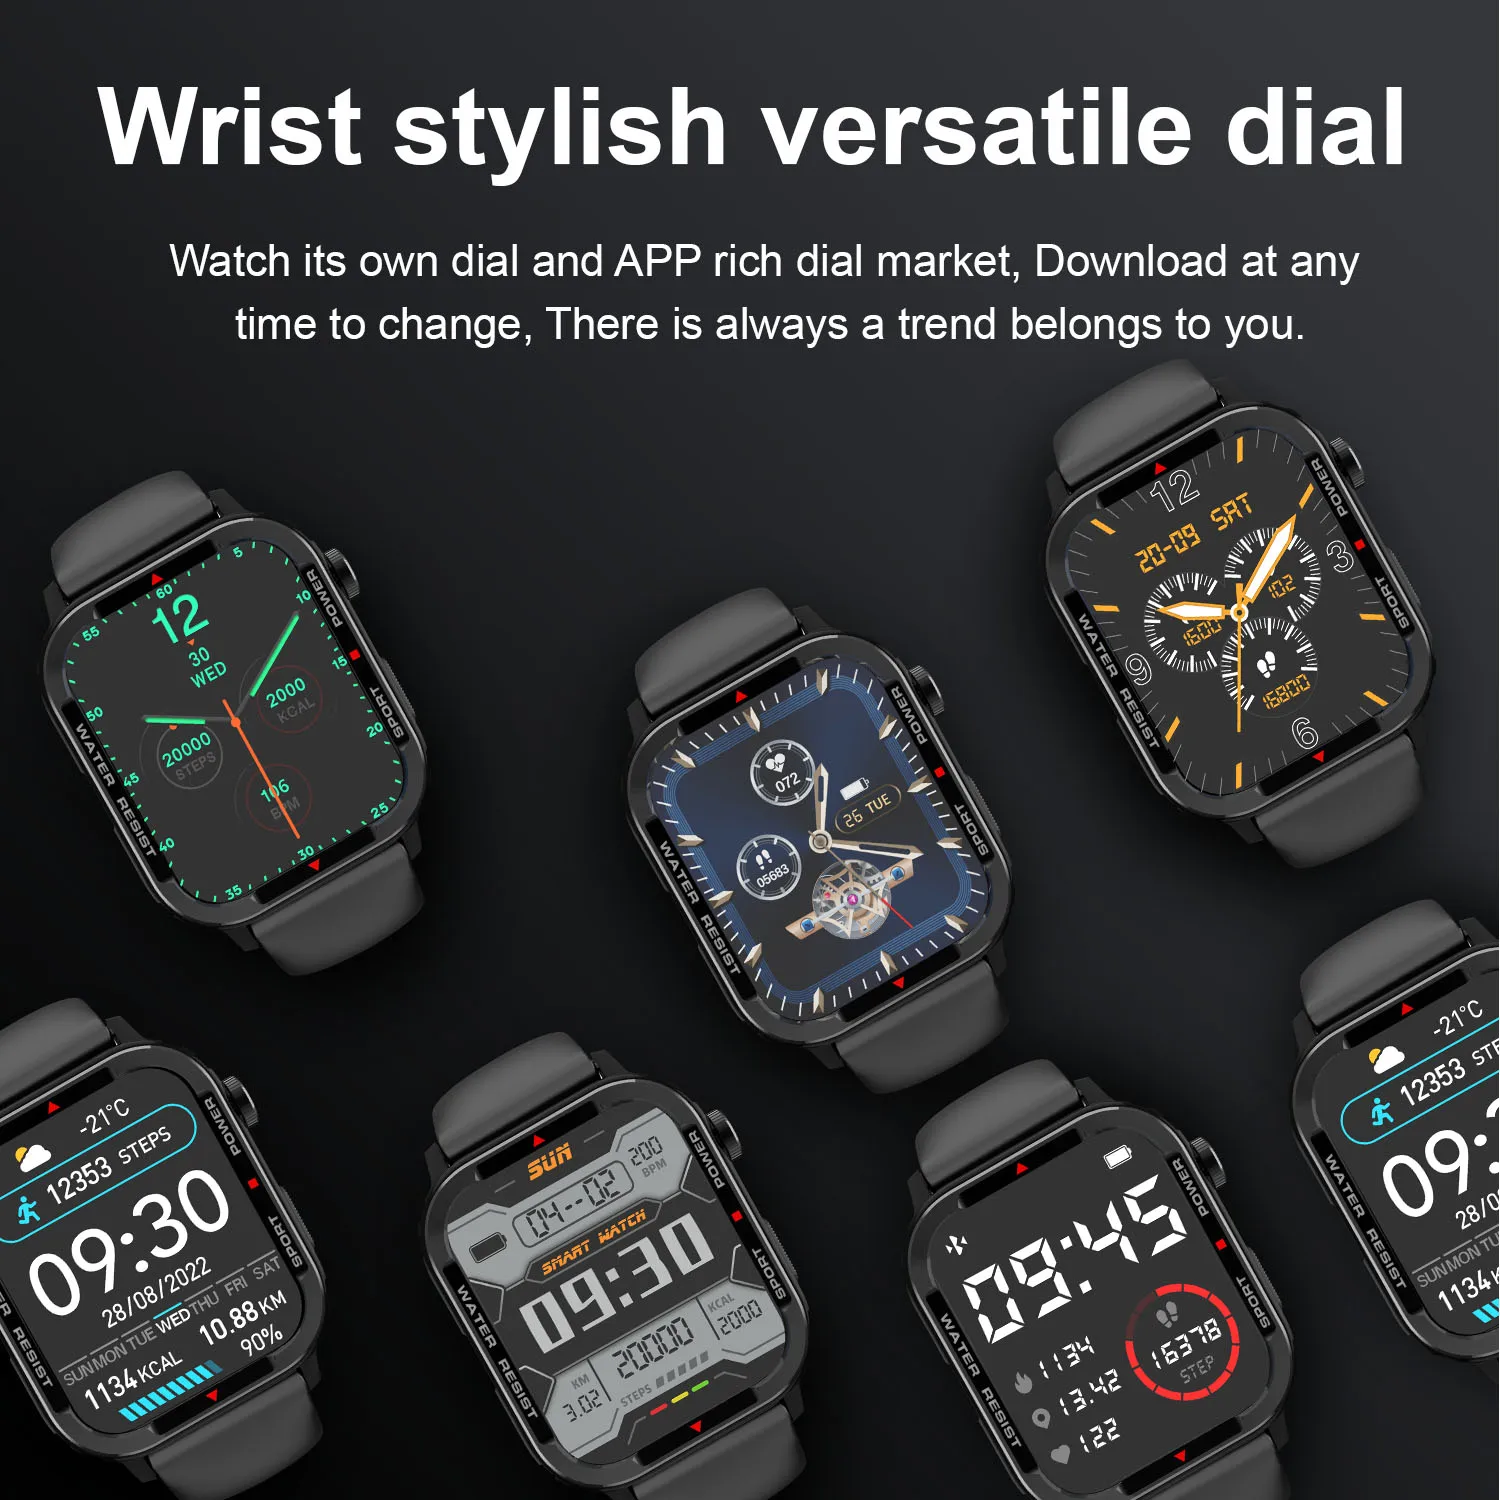 Açık Smartwatch 1.85 inç Tam Dokunmatik Ekran Ses aAssistant Bluetooth Çağrı 123 Spor Modu nabız monitörü akıllı saat Görüntü 5